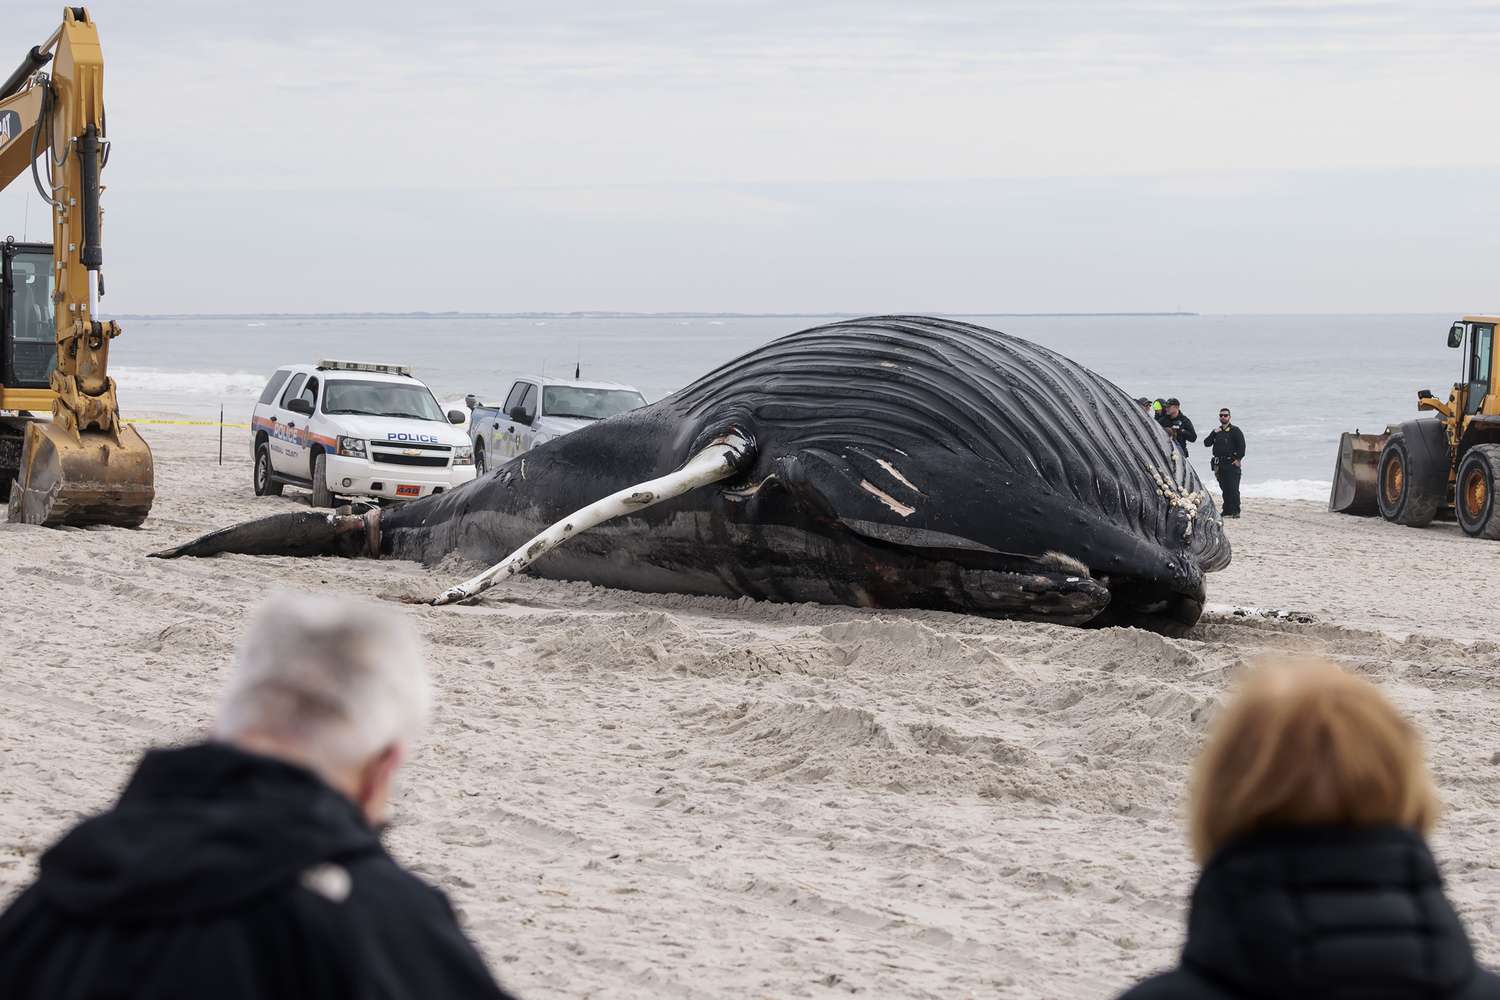 35-ฟุต วาฬหลังค่อมเกยหาดนิวยอร์ก: 'วันนี้เป็นวันที่น่าเศร้า'